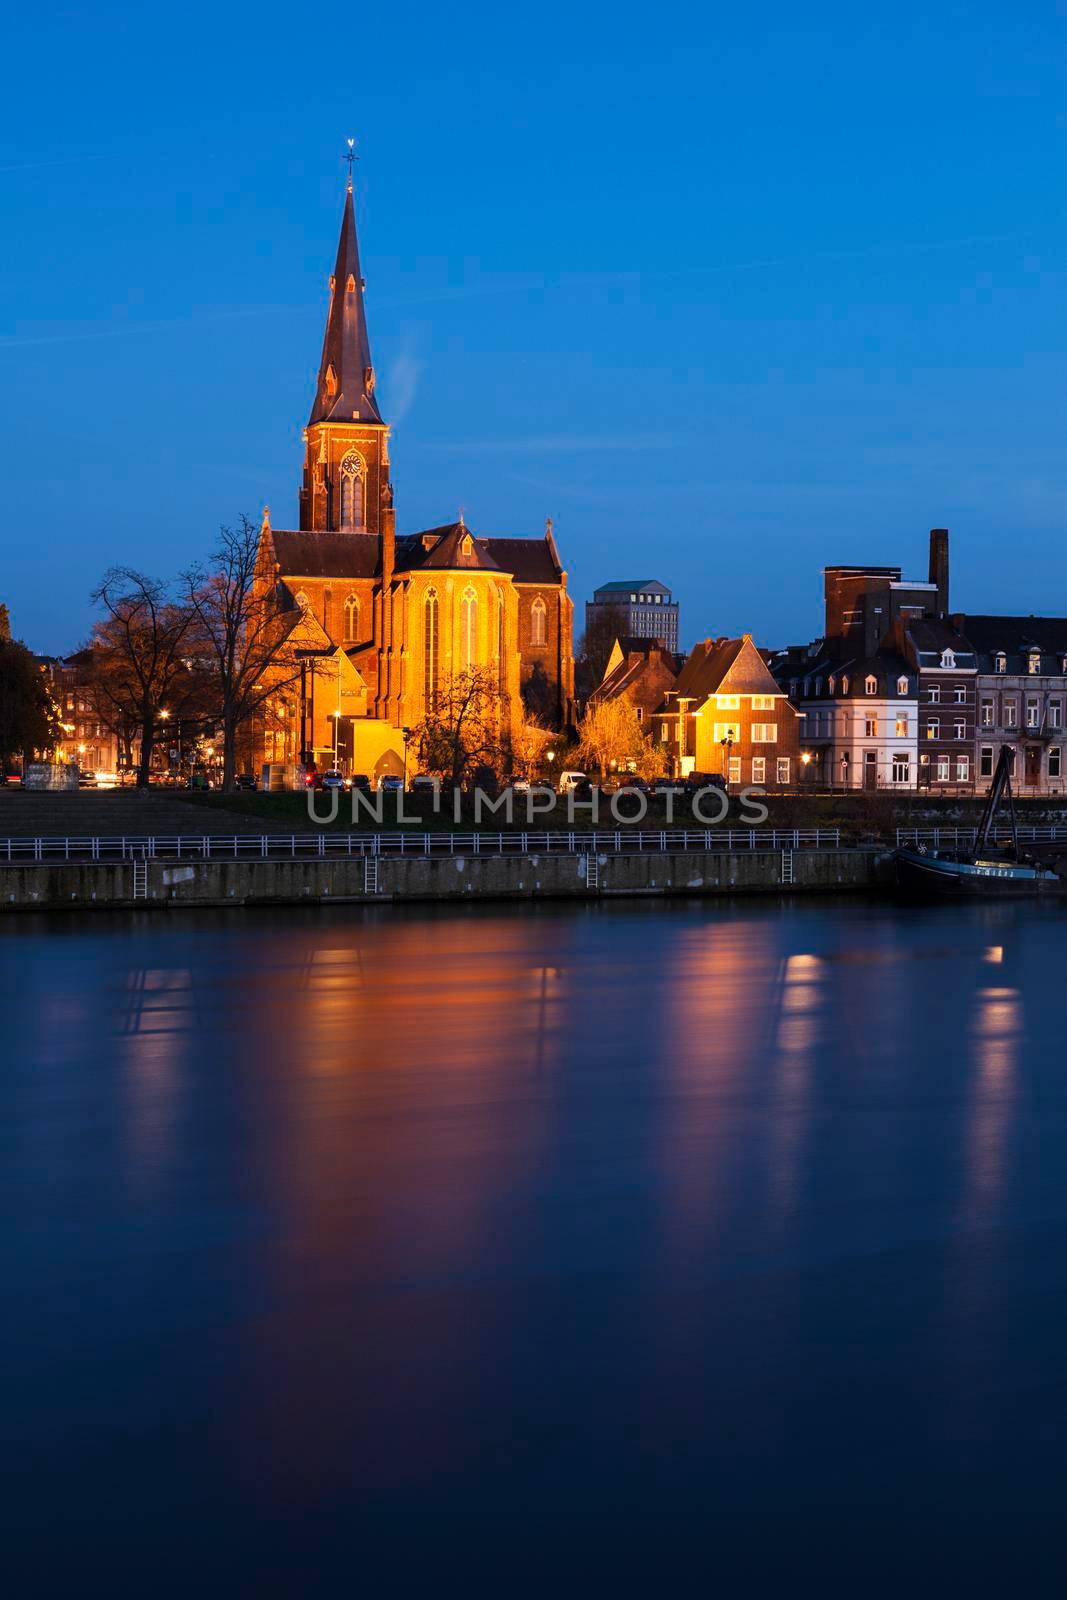 Sint Martinuskerk Church in Maastricht by benkrut